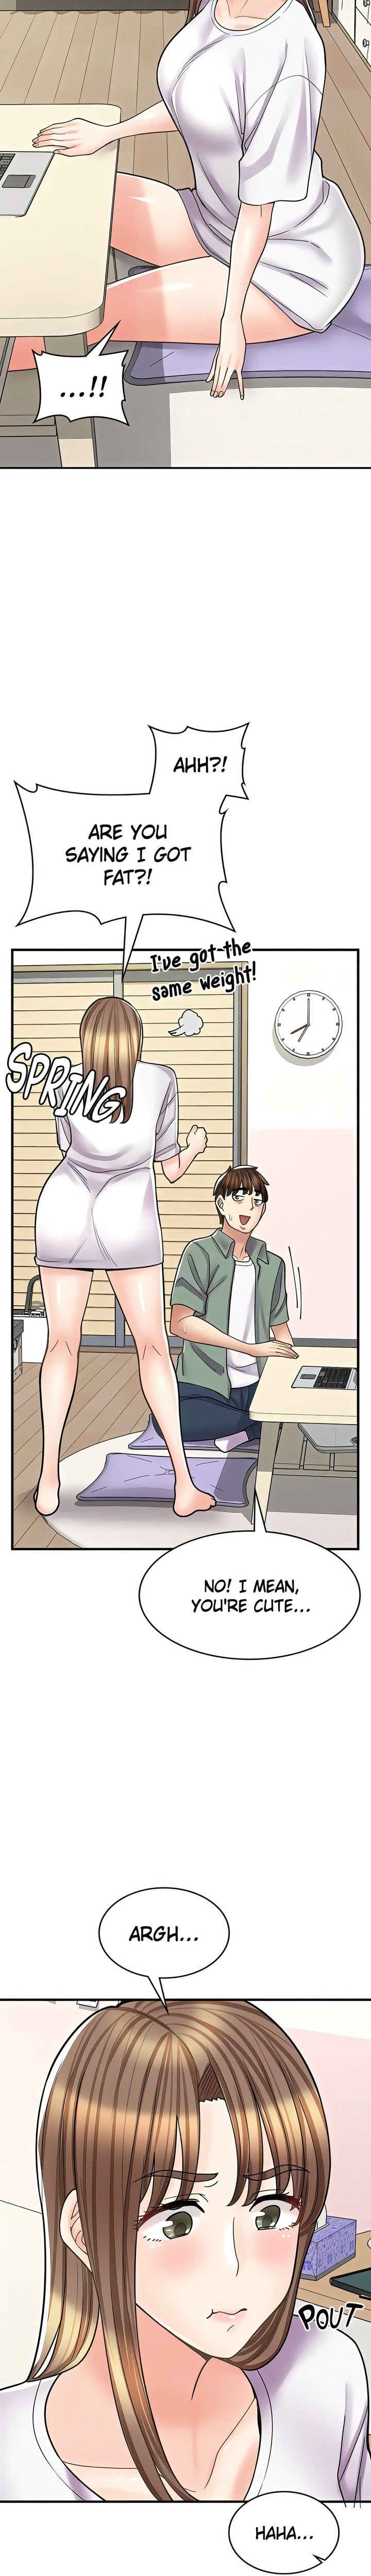 erotic-manga-cafe-girls-chap-37-11